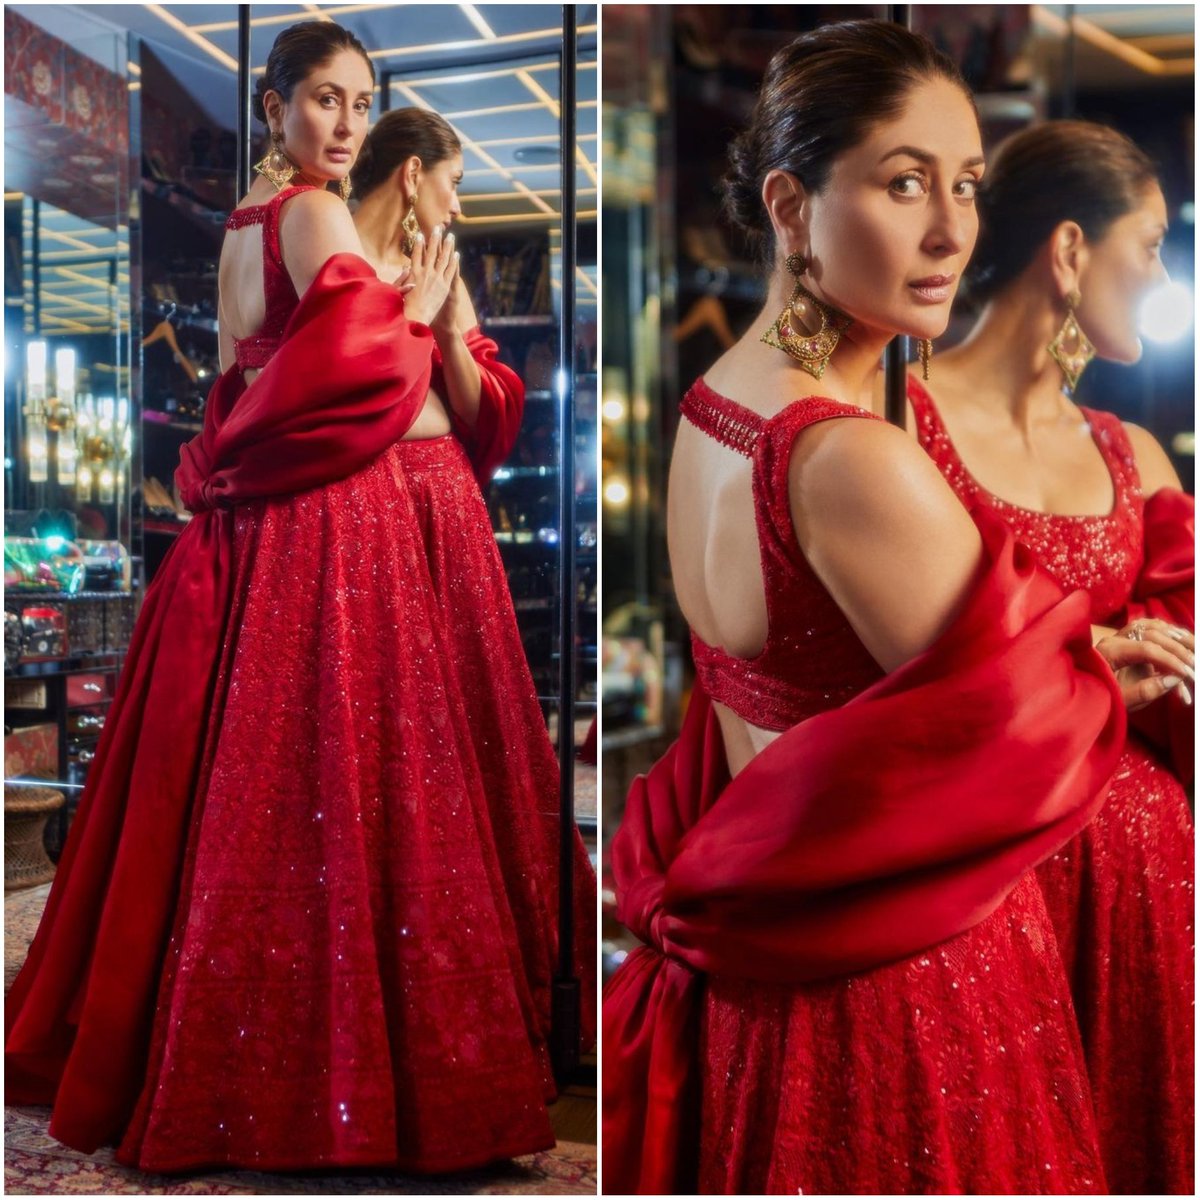 #KareenaKapoorKhan In #AnjulBhandari Outfit & #ShwetaGupta Fine Jewellery for the Grand Opening of #NitaMukeshAmbaniCulturalCenter in Mumbai - Styled By @DivyakDsouza ❤️

#OOTD #KareenaKapoor #NMACC